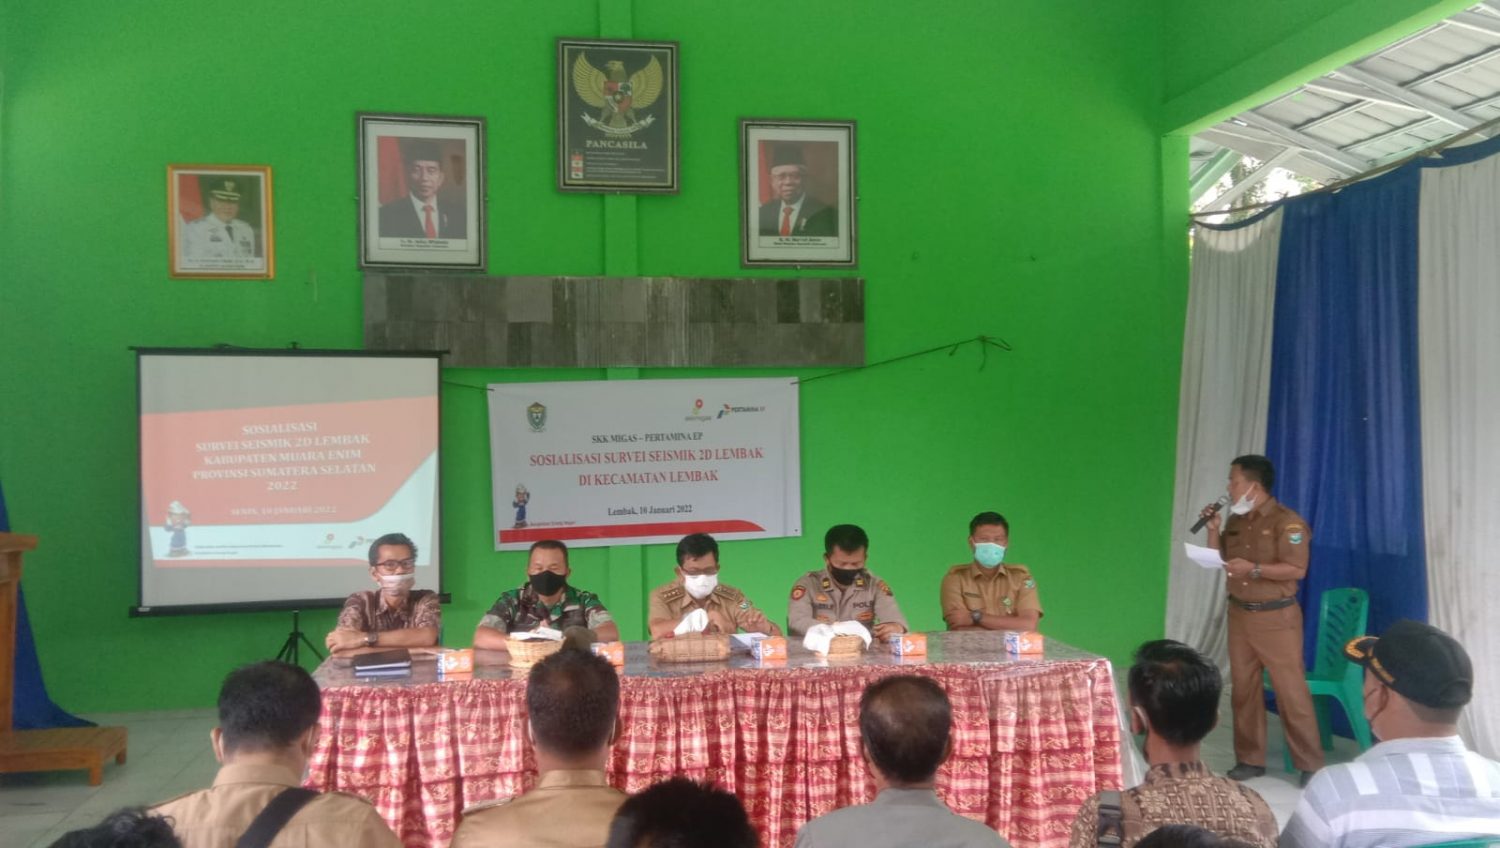 Operasional Seismik PT. BGP Indonesia Mulai Merambah ke Desa Lembak Kabupaten Muara Enim